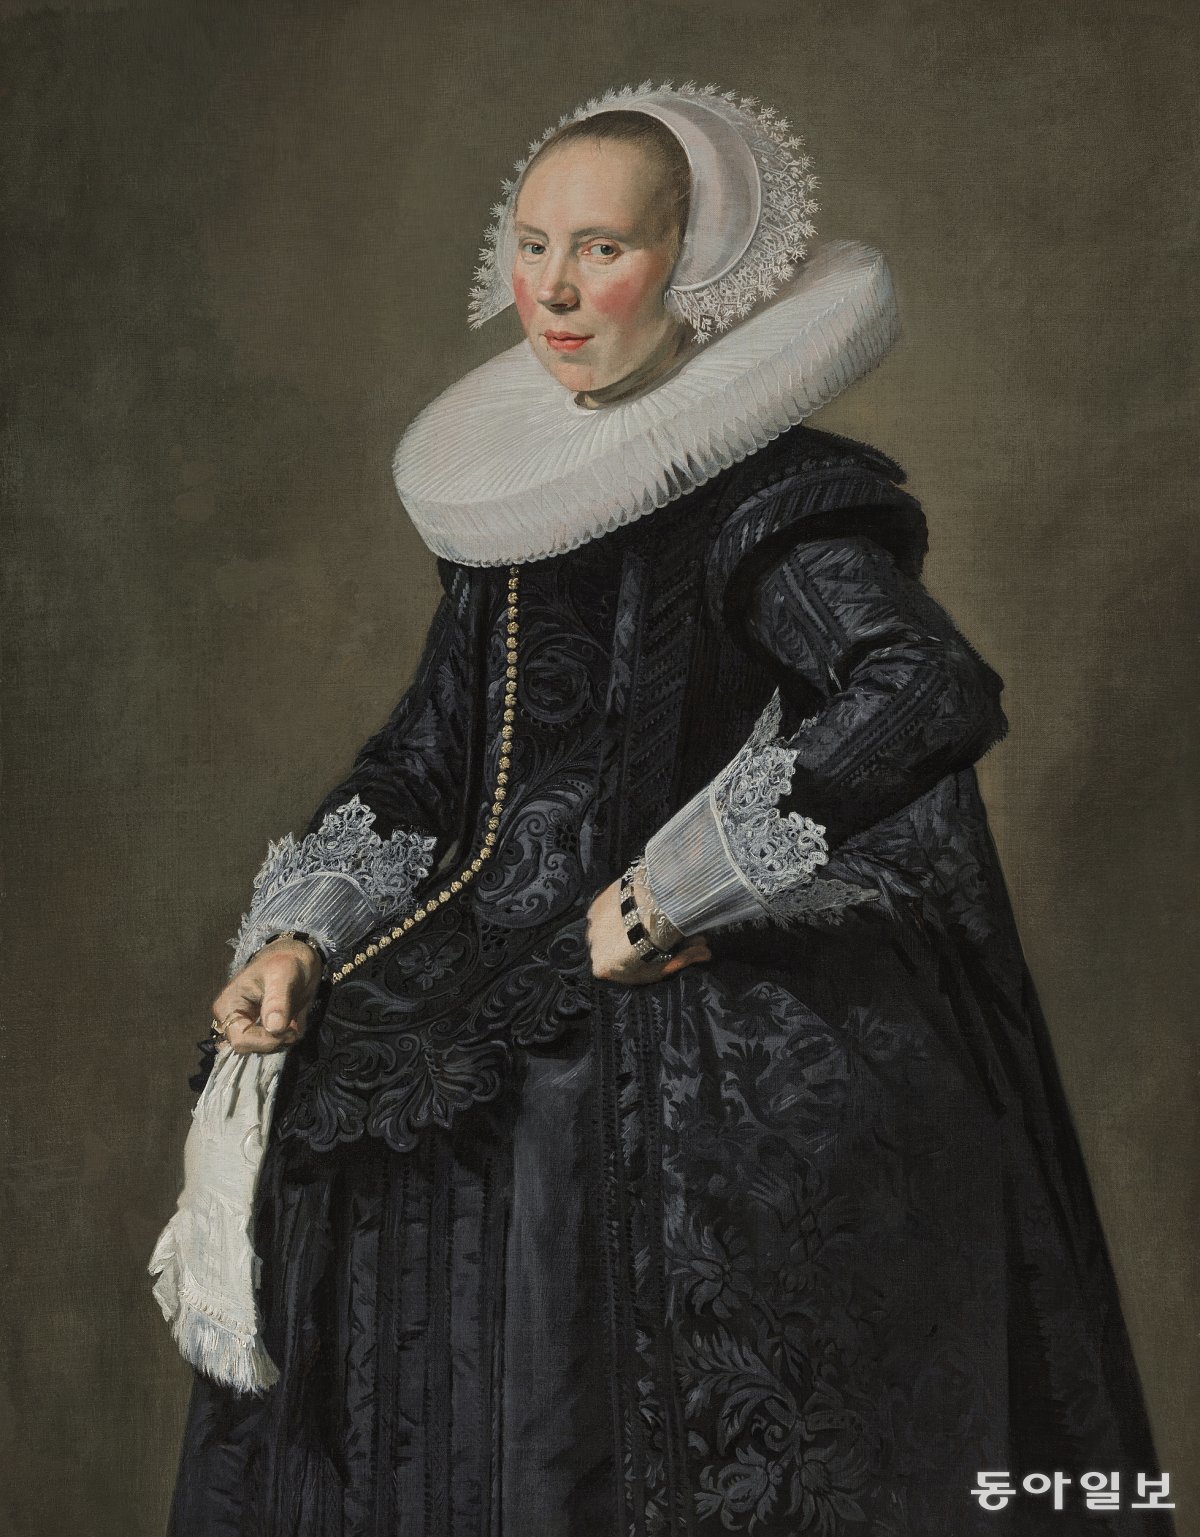 프란스 할스, 쿠네라 판 베어스드롭(Cunera van Baersdrop)의 초상. 1625년경. Susan and Matthew Weatherbie Collection. 사진 레익스미술관 제공.